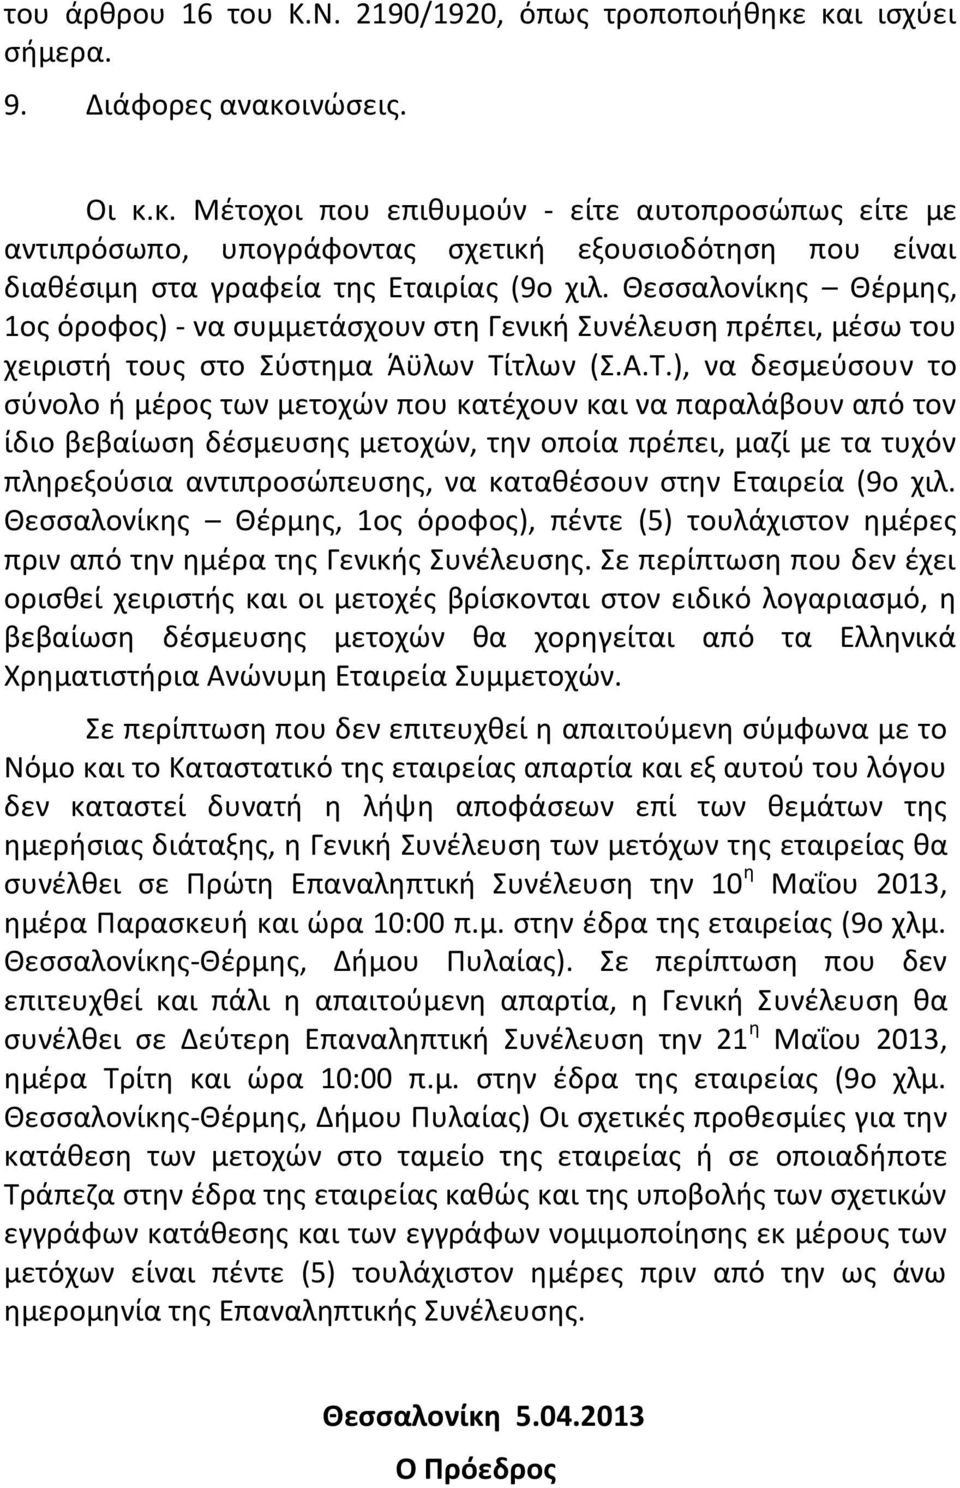 Θεσσαλονίκης Θέρμης, 1ος όροφος) - να συμμετάσχουν στη Γενική Συνέλευση πρέπει, μέσω του χειριστή τους στο Σύστημα Άϋλων Τί